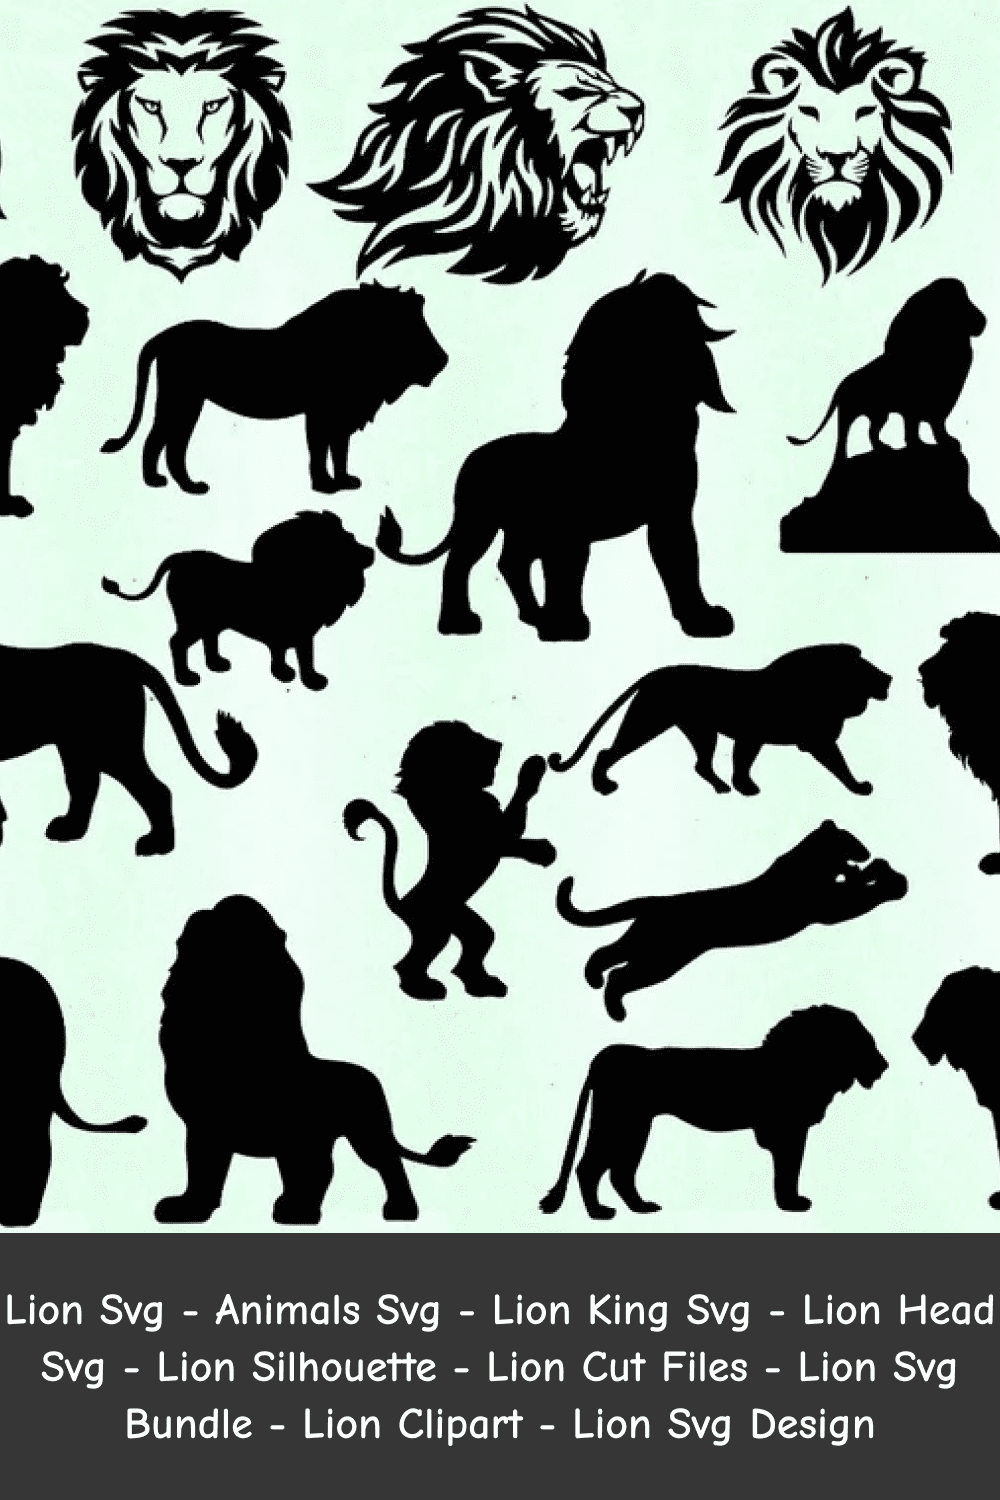 Lion King SVG.